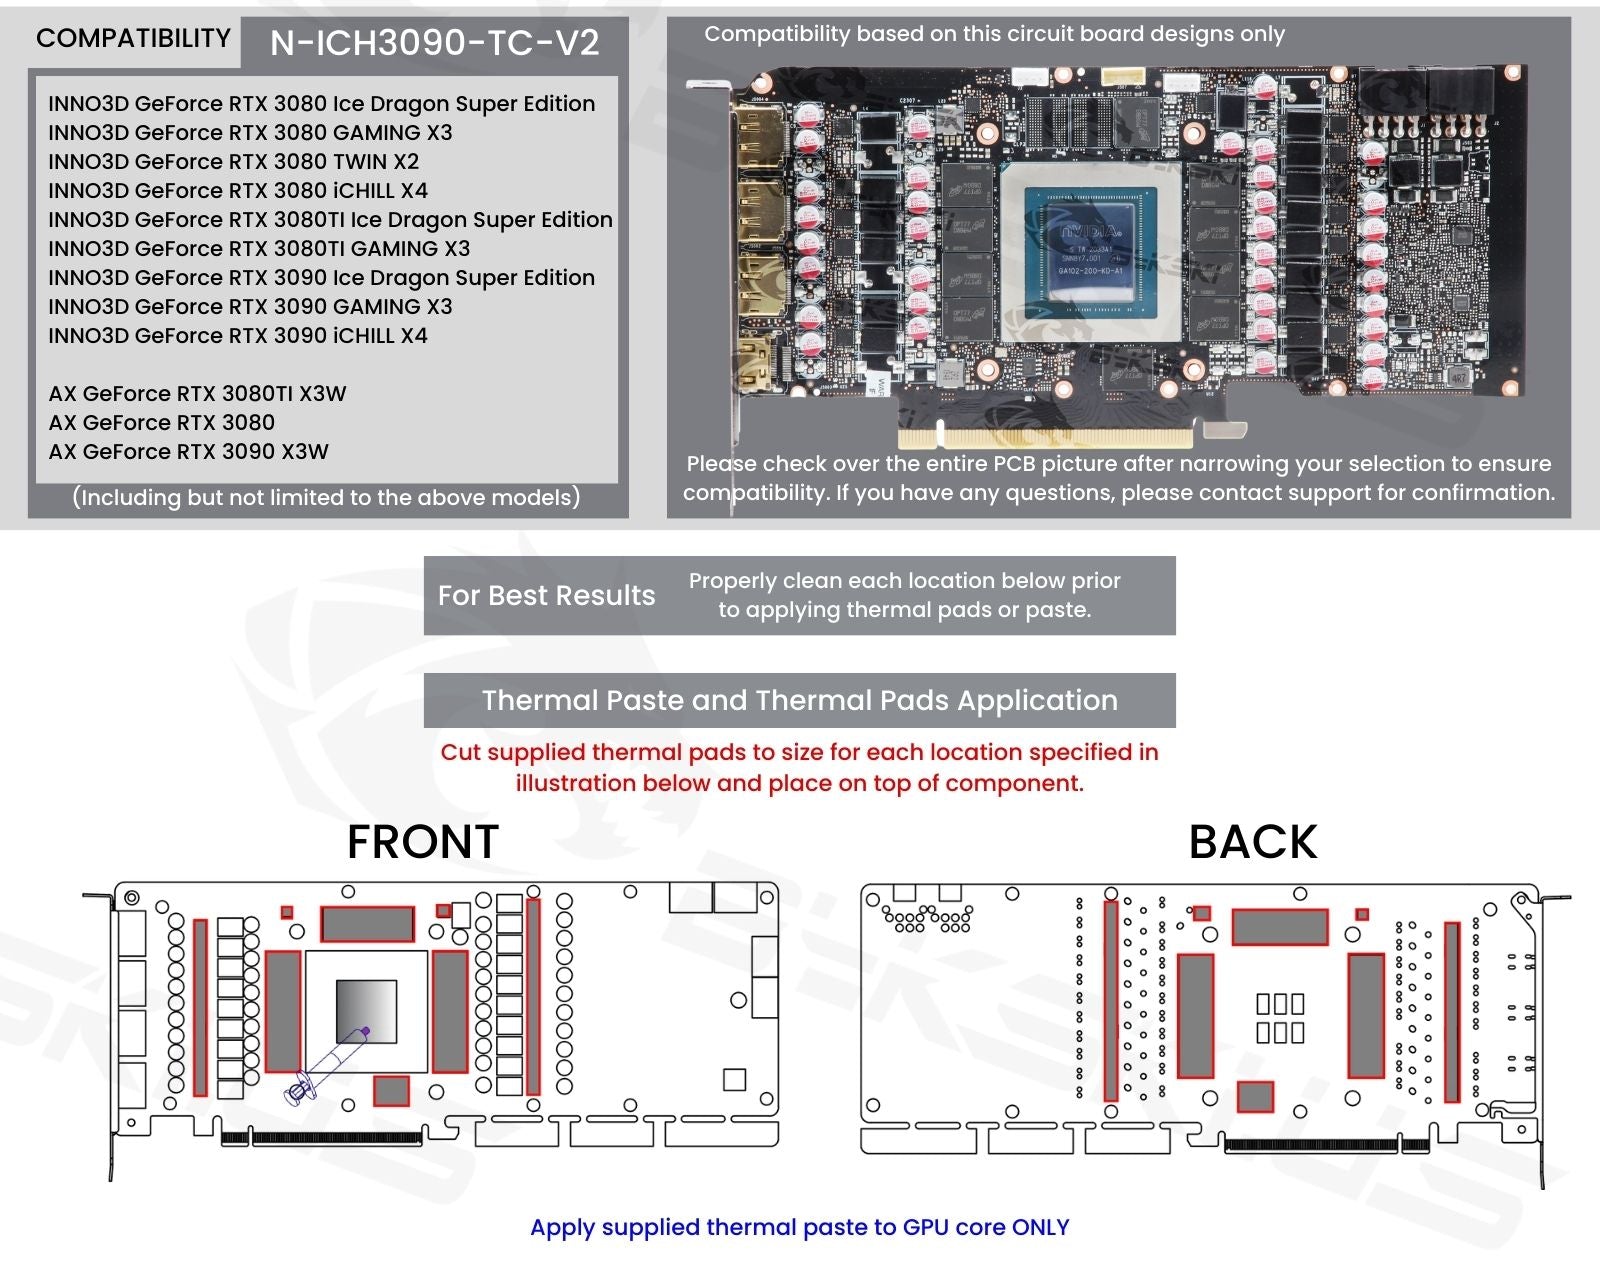 Bykski Full Coverage GPU Water Block and Backplate For INNO3D/AX GeForce RTX 3080/TI/3090 (N-ICH3090-TC-V2)